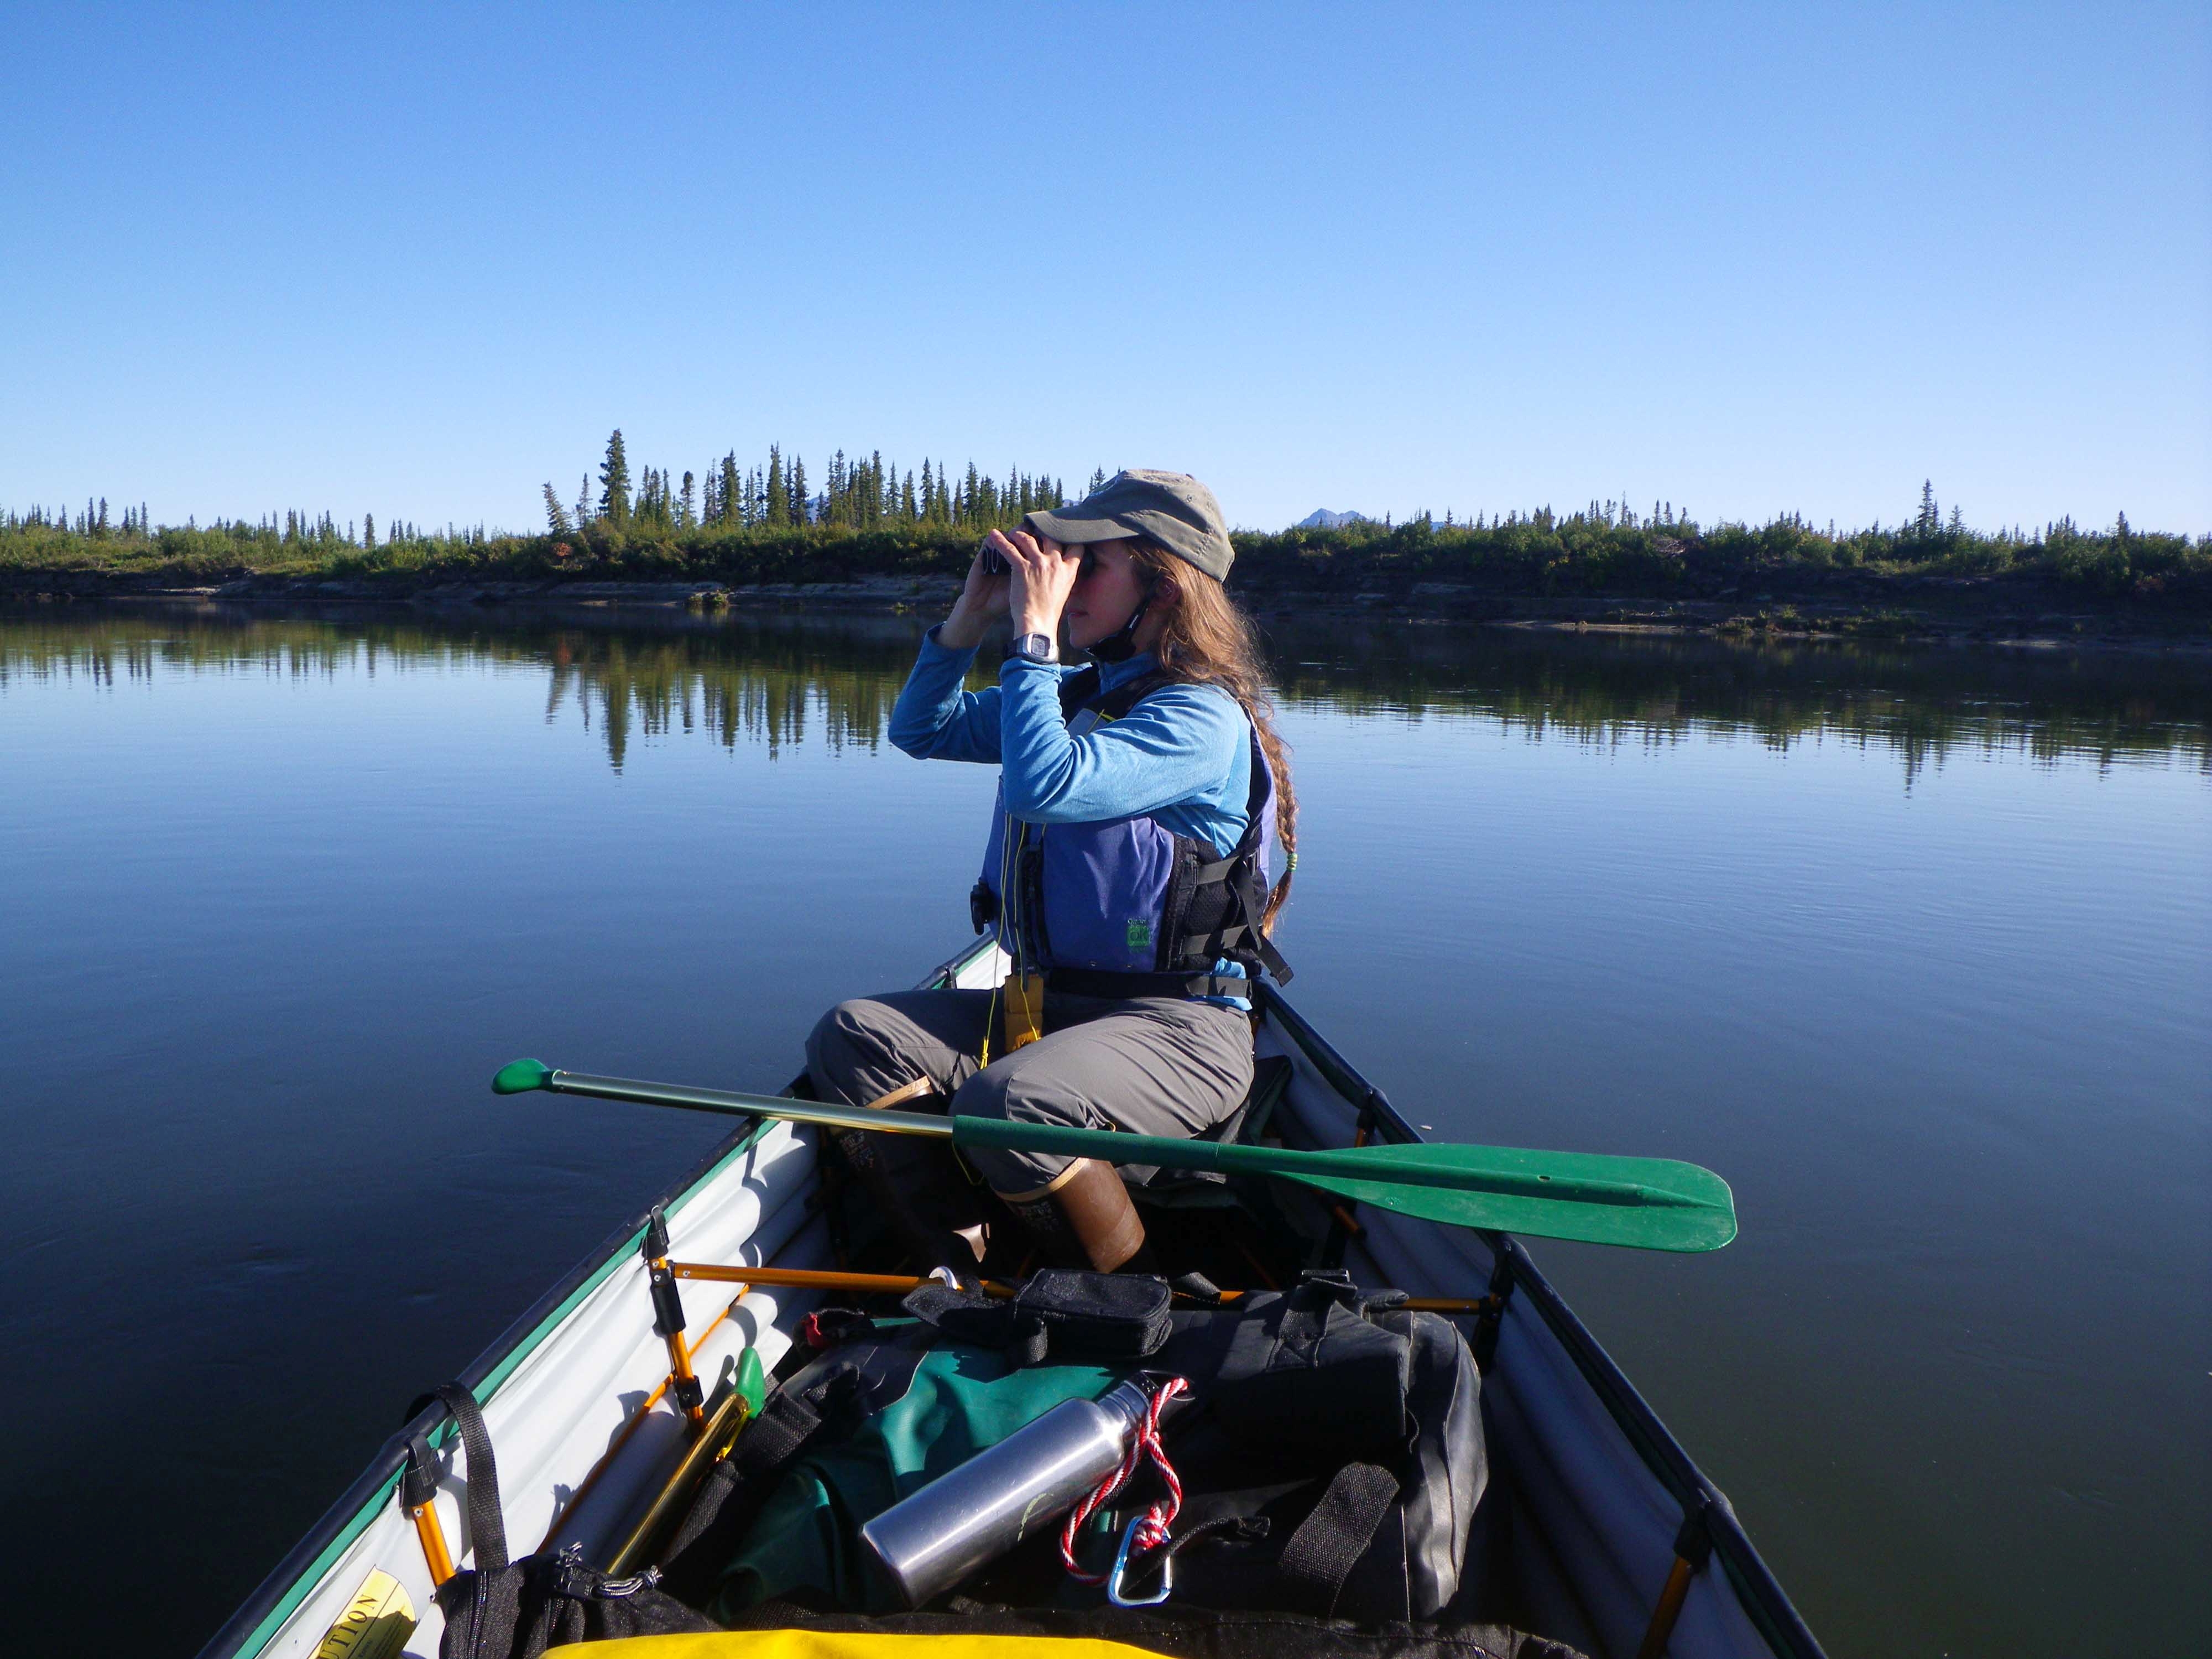 Boater-in-a-canoe-using-binoculars.jpg?m